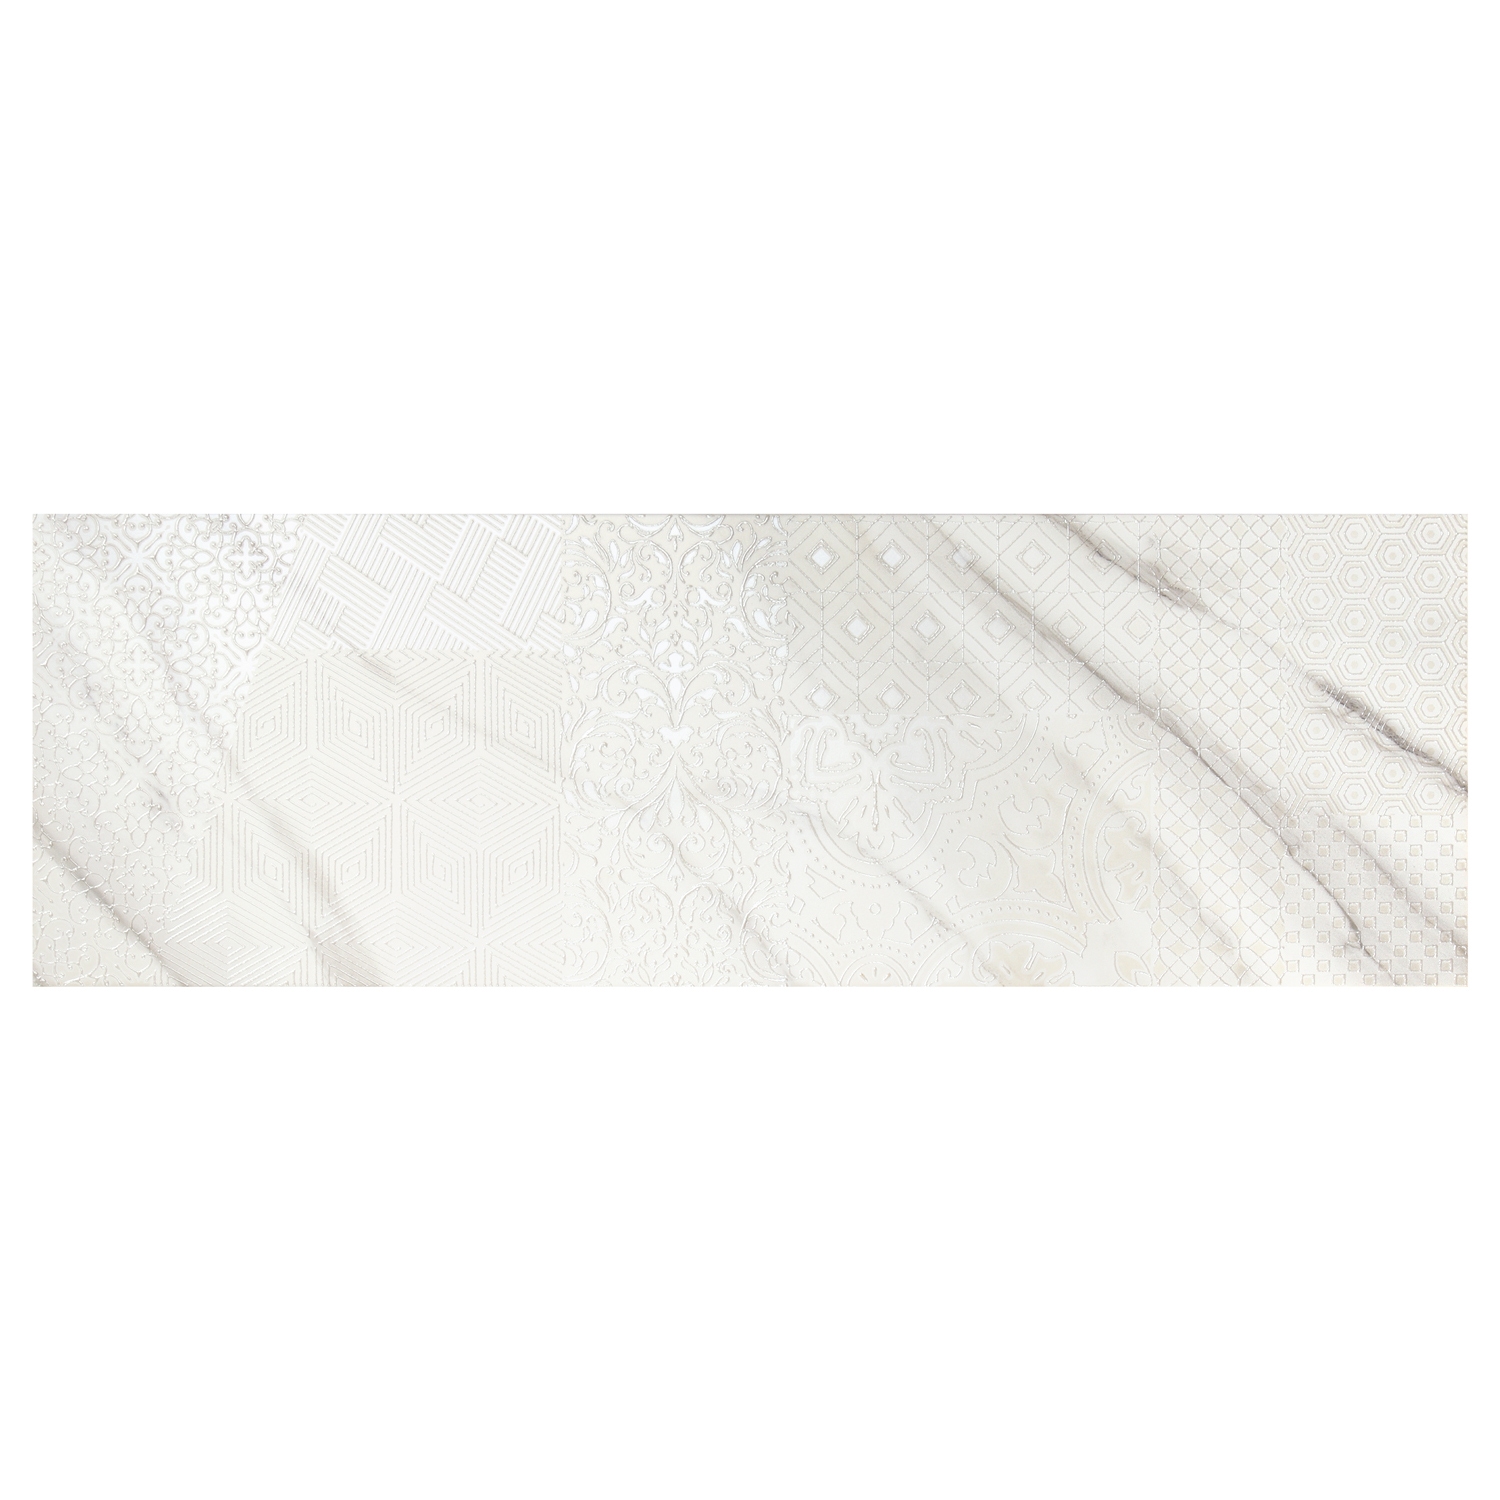 Decor faianta baie / bucatarie Atlas A alb, lucios, 28.5 x 85.5 cm